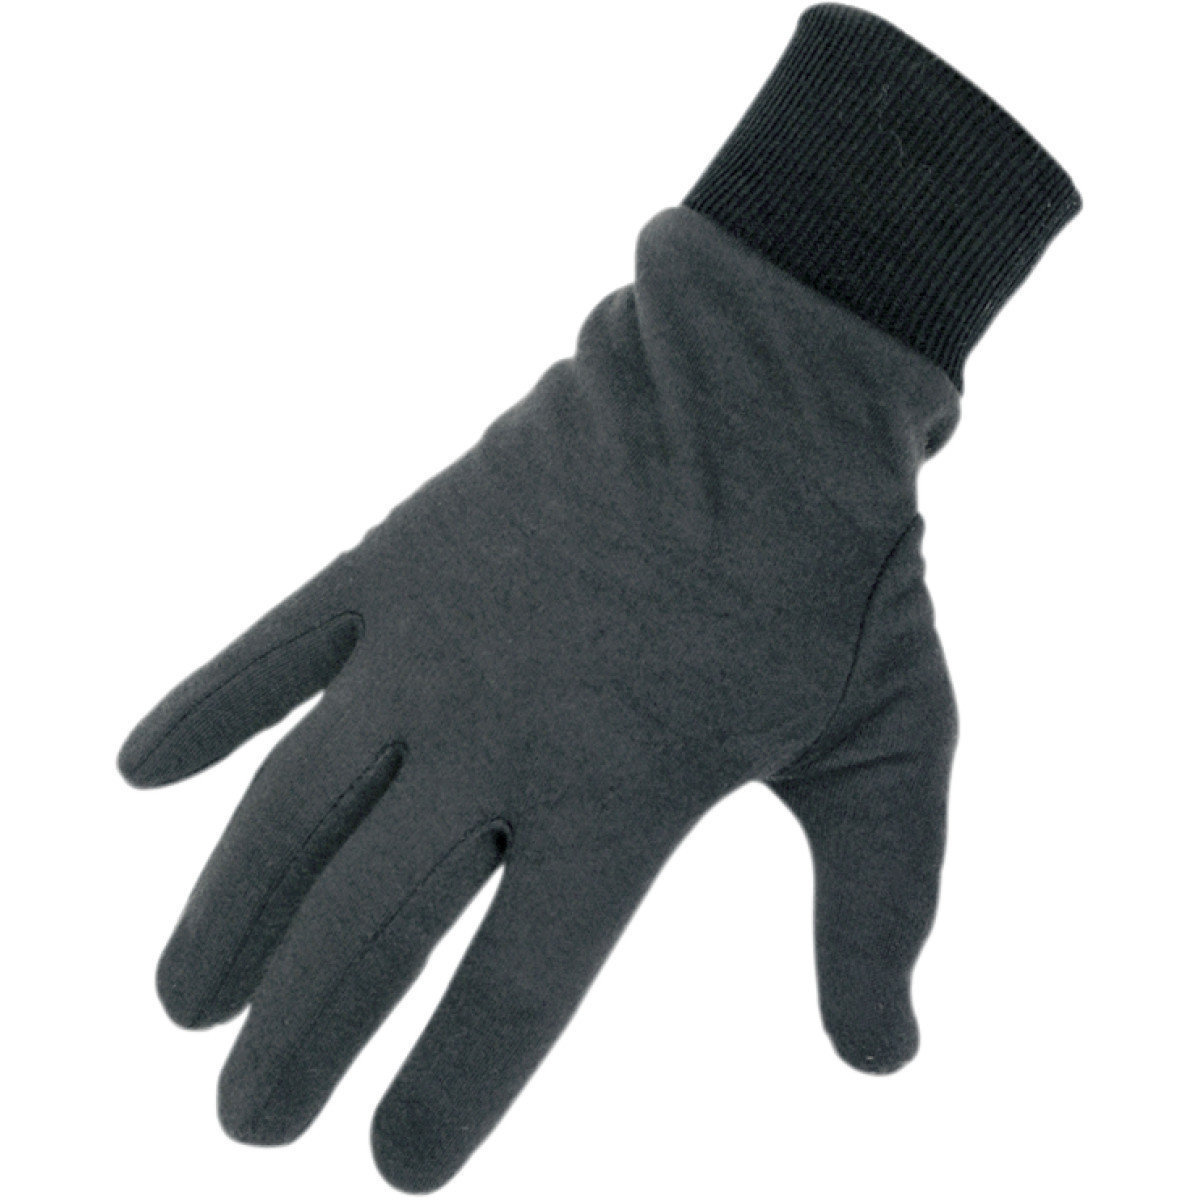 Rukavice Arctiva Glovesliner Short Cuff Dri-Release Black L/XL Rukavice